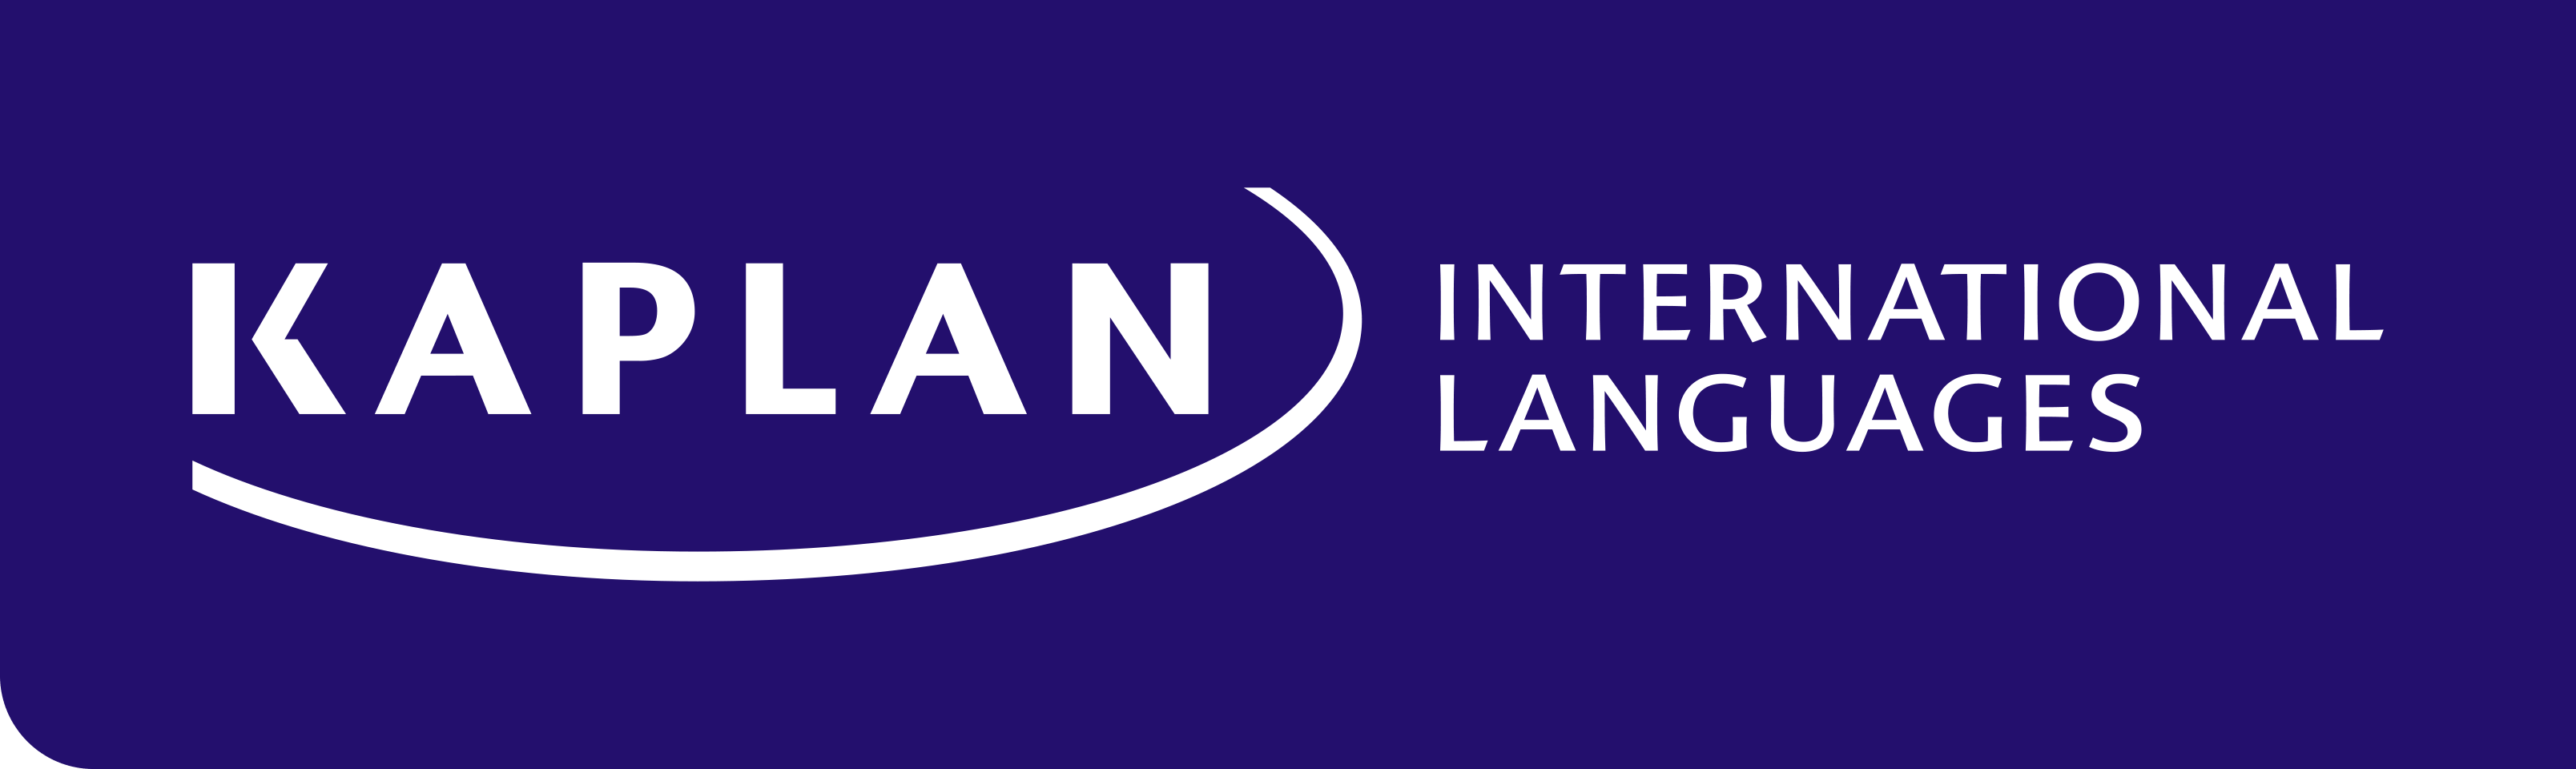 Kaplan International Languages Logo - Trang Chủ